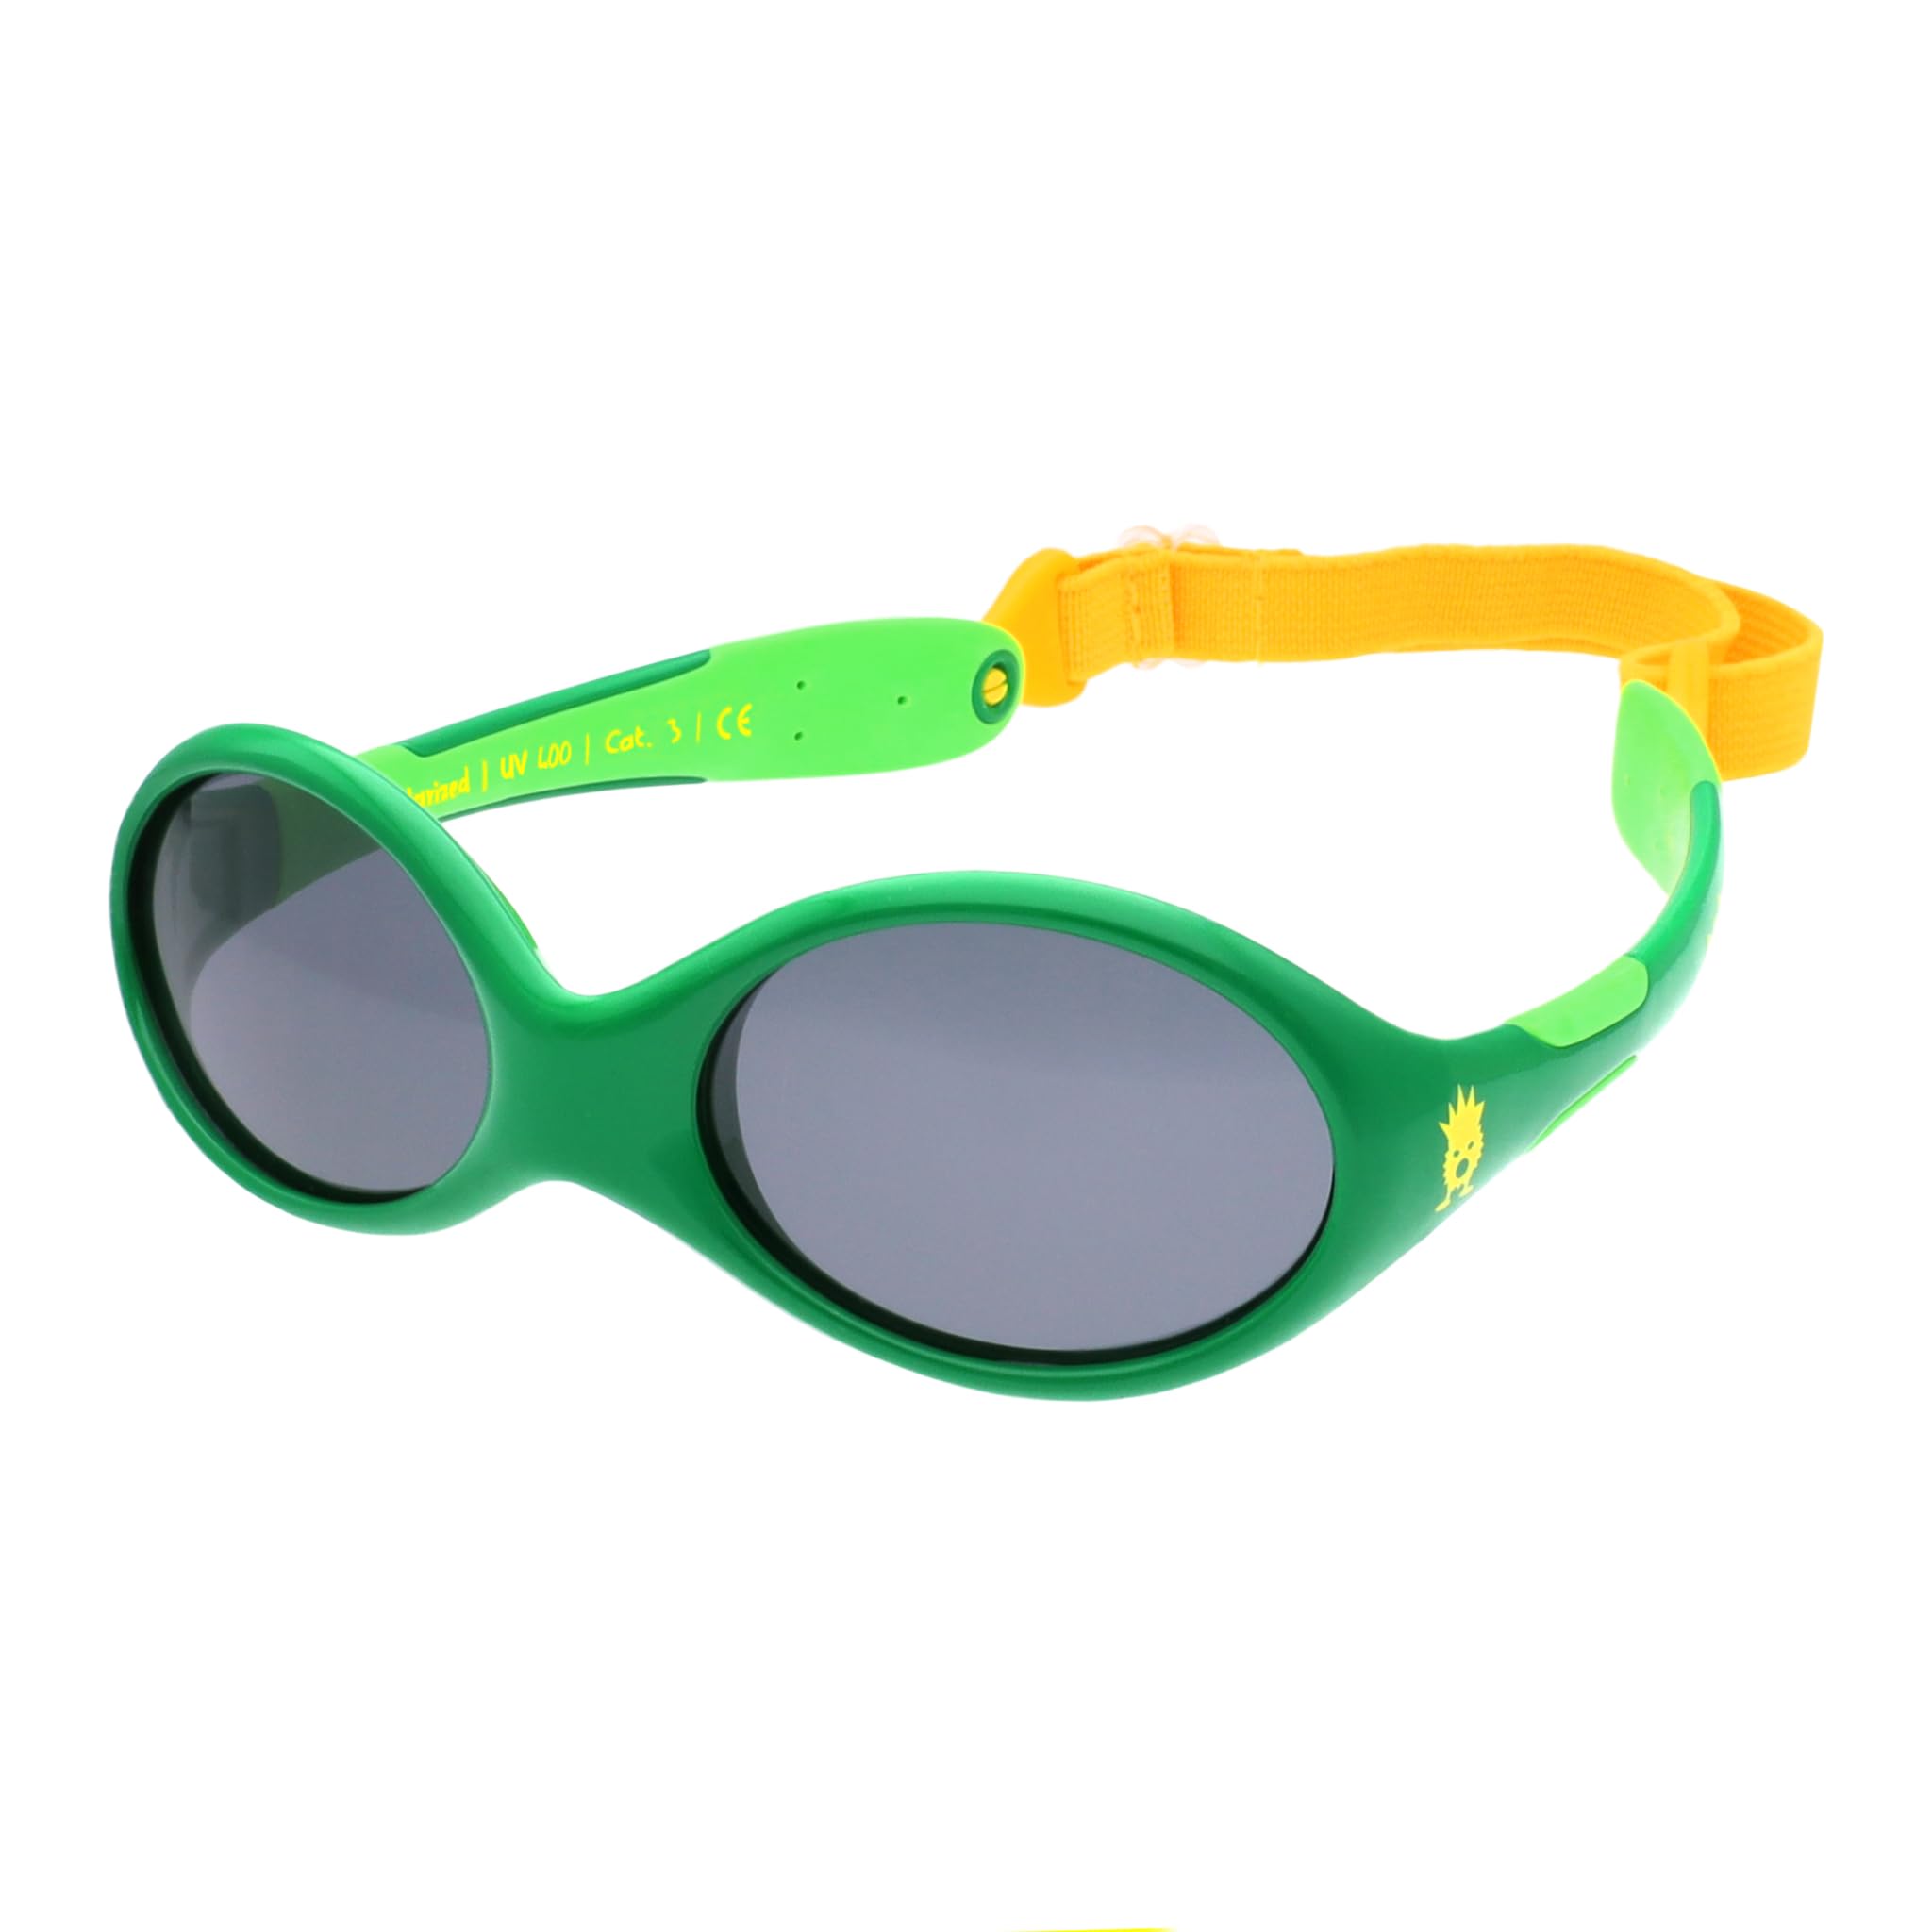 ActiveSol BABY Sonnenbrille 0–18 Monate, 100% UV-Schutz, BPA-frei, polarisiert, verstellbares Band, Prüfengel Bestnoten